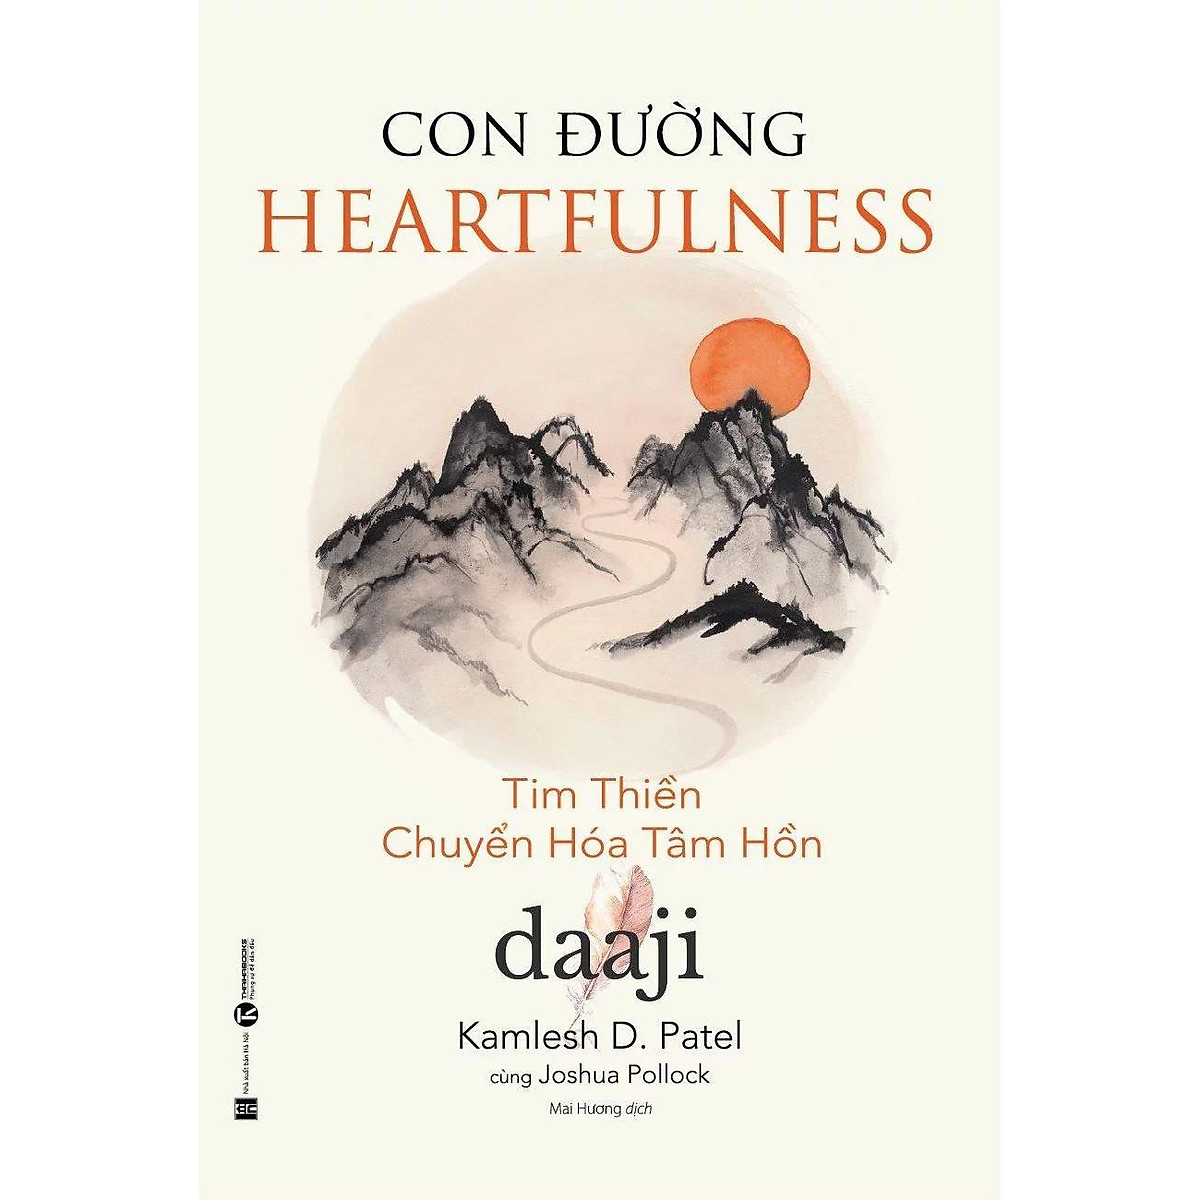 Cuốn Sách Cực Hay Về Nghệ Thuật Sống Đẹp: Con đường Heartfulness – Tim thiền - chuyển hóa tâm hồn